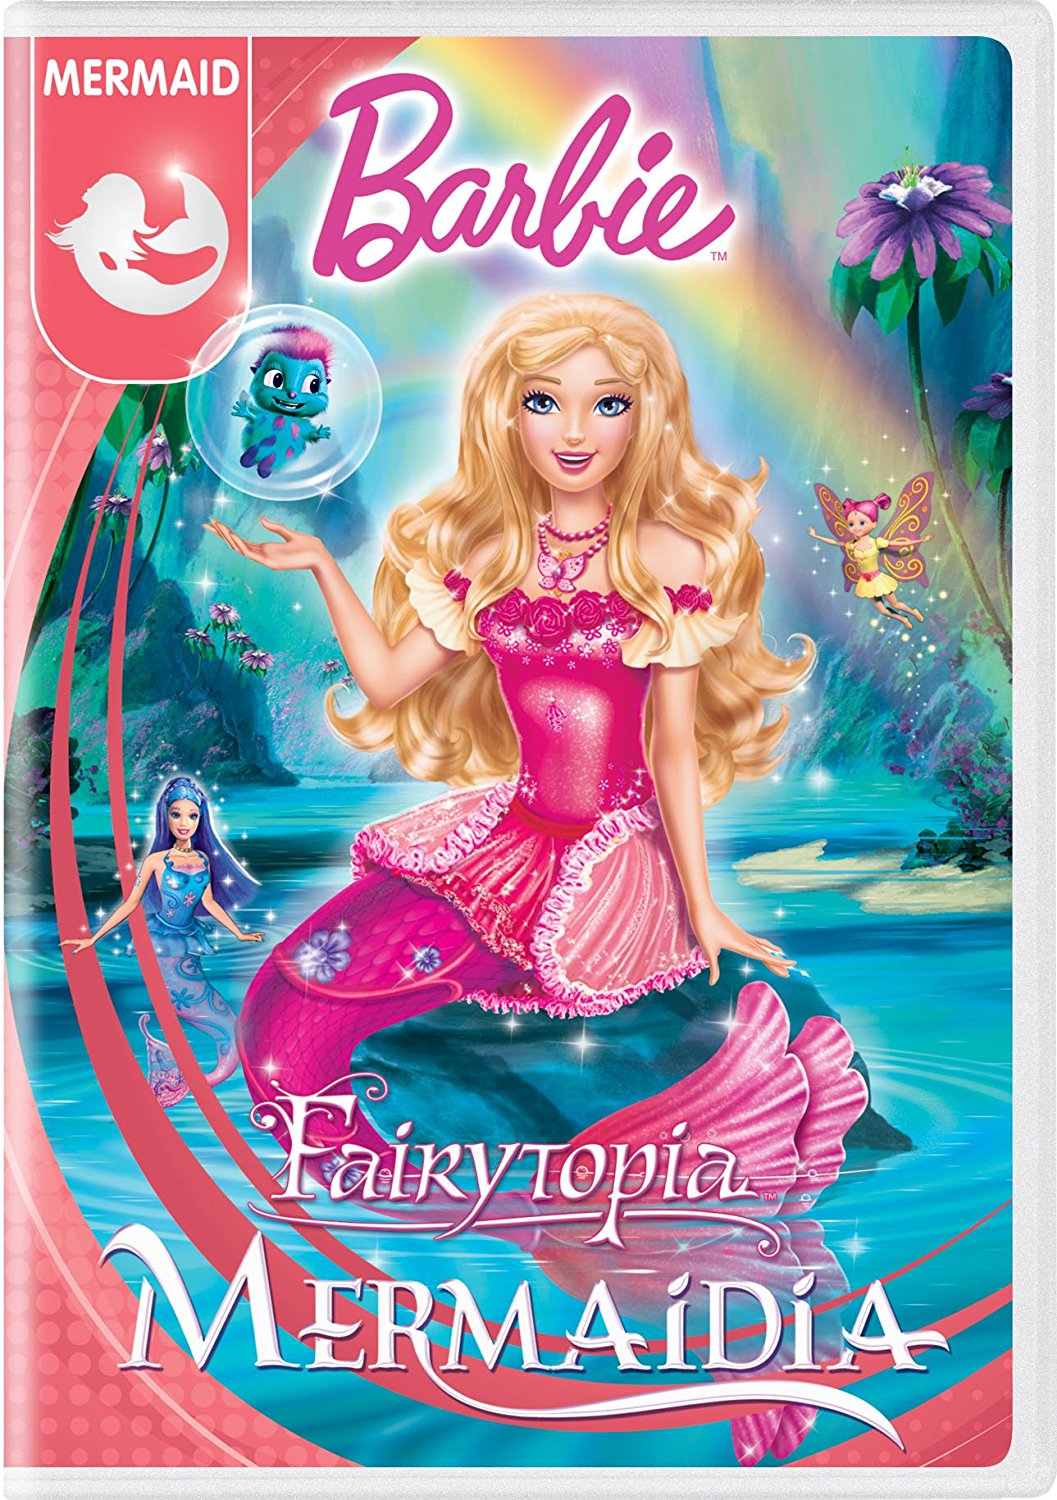 Barbie Fairytopia: Mermaidia on DVD Only $5 ...